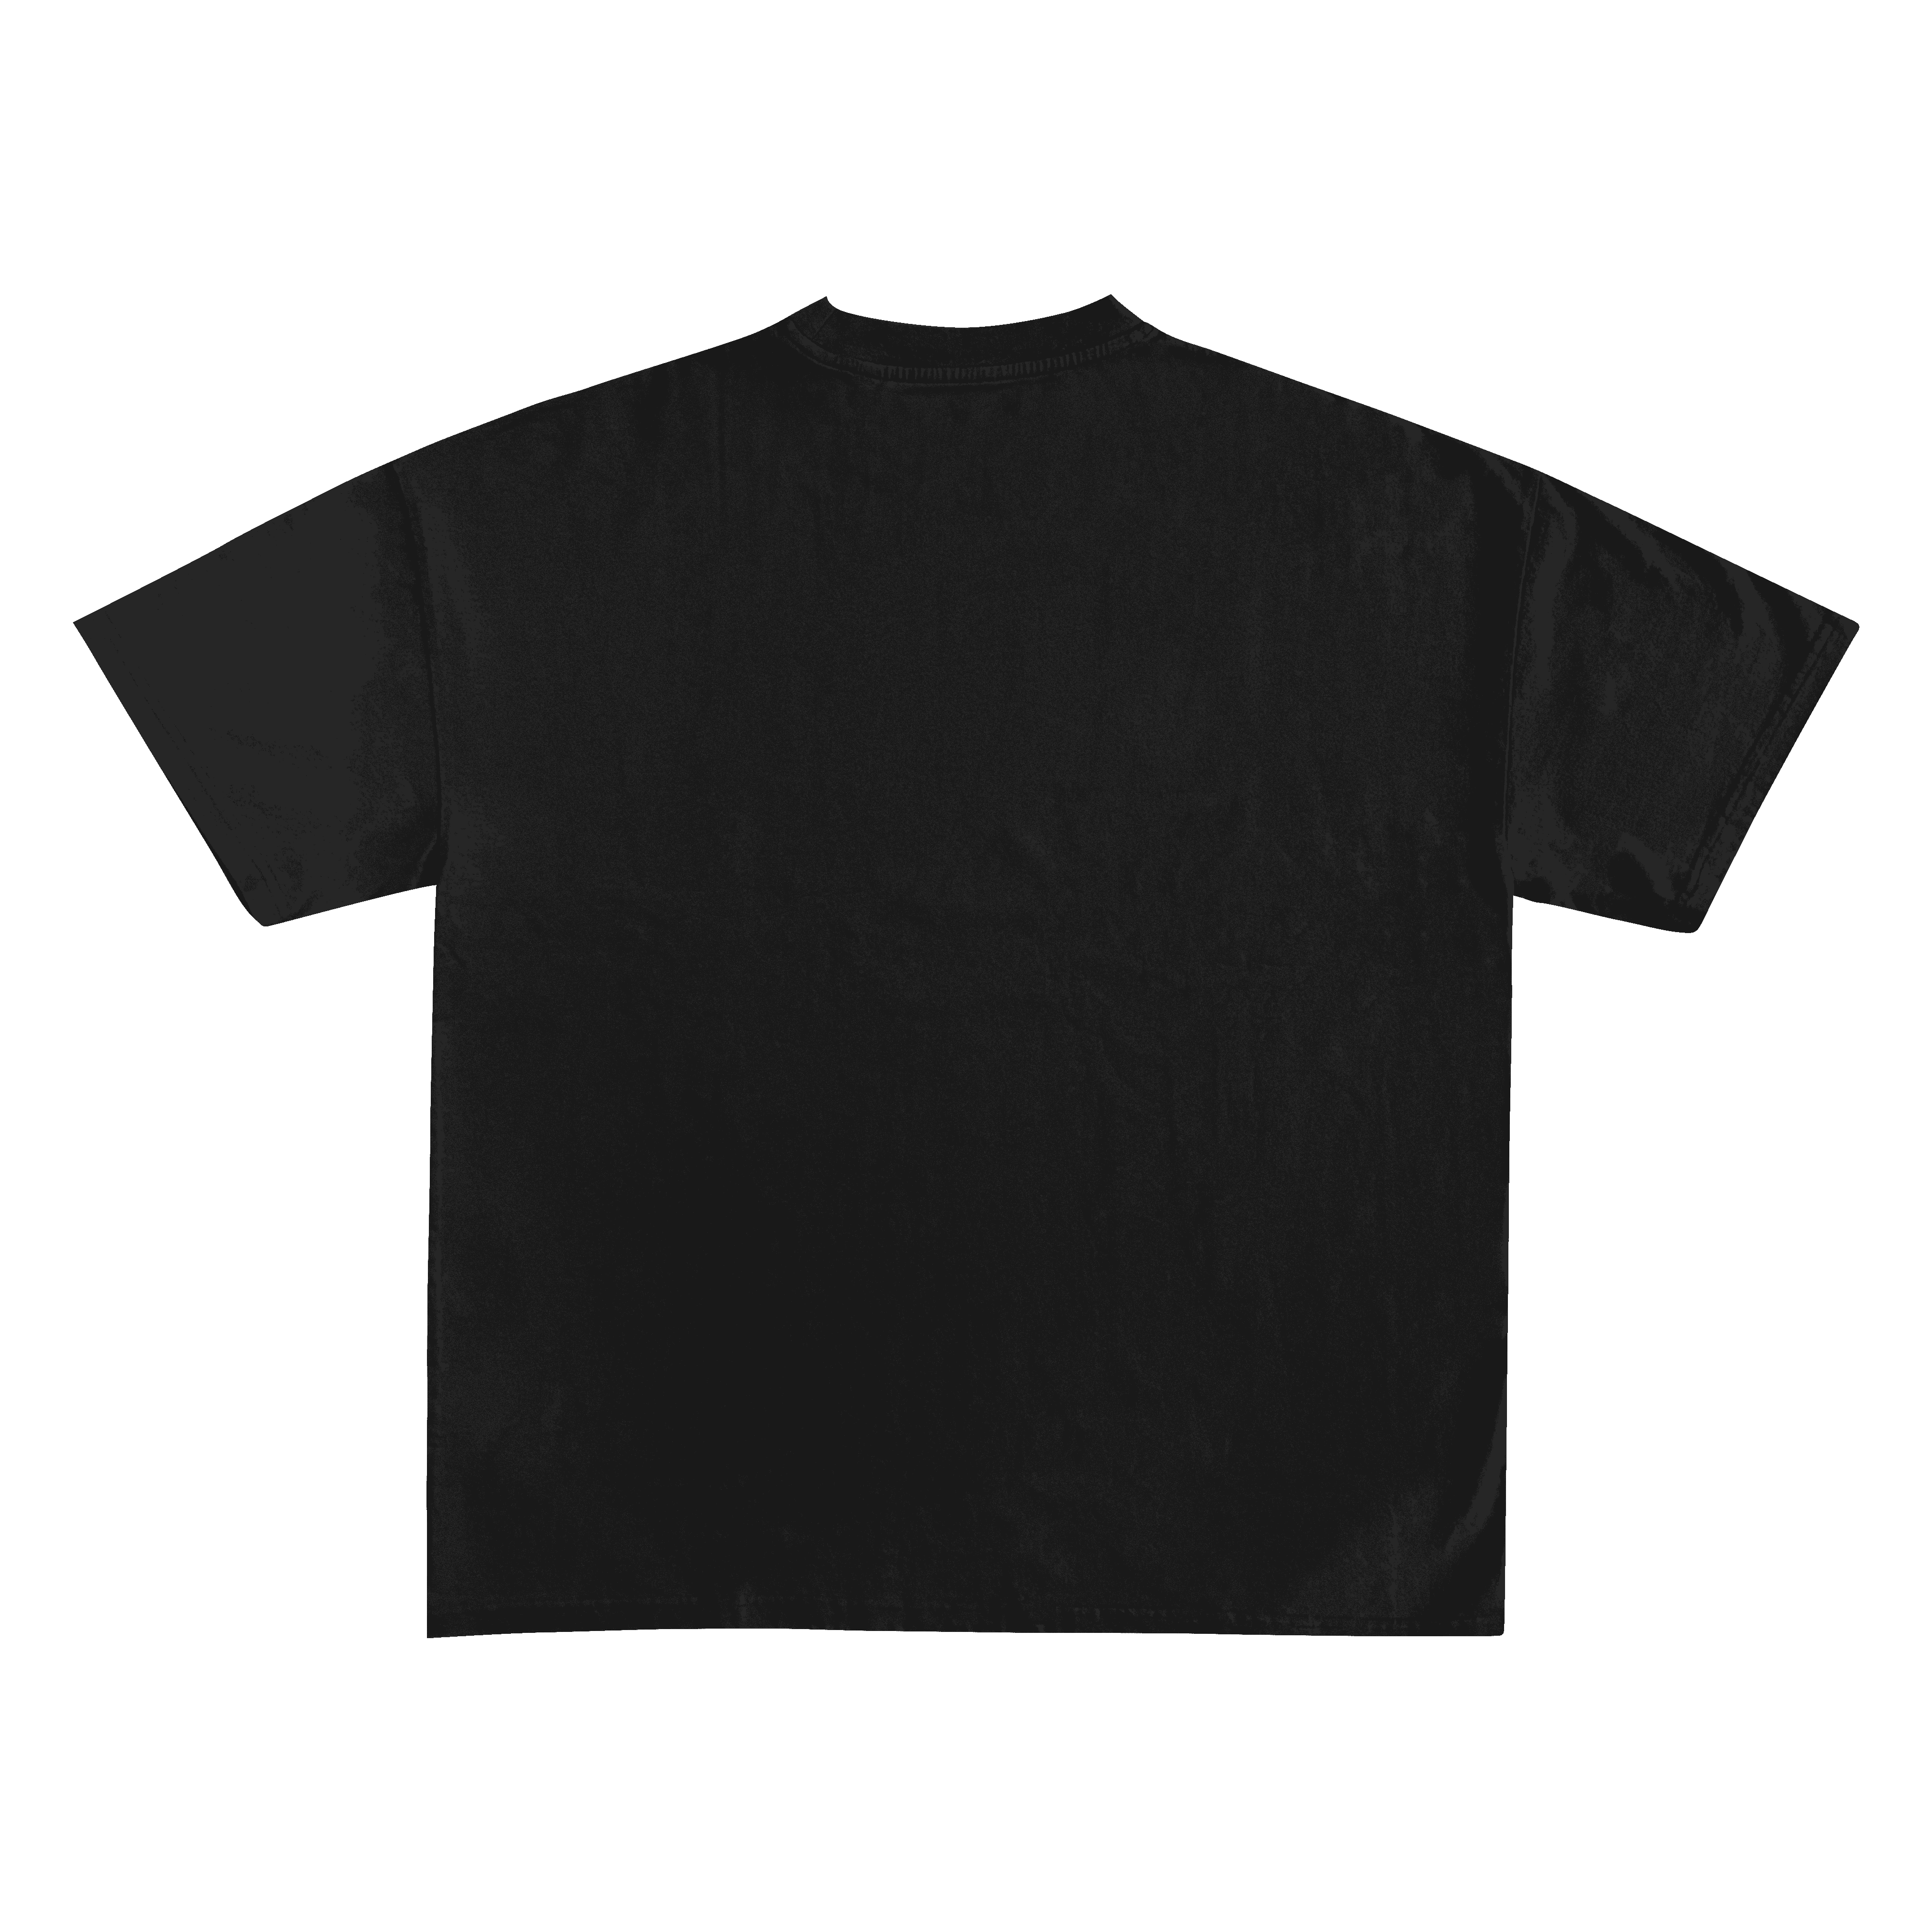 Playboi Carti Unisex Black Oversized Tshirt - GENRAGE